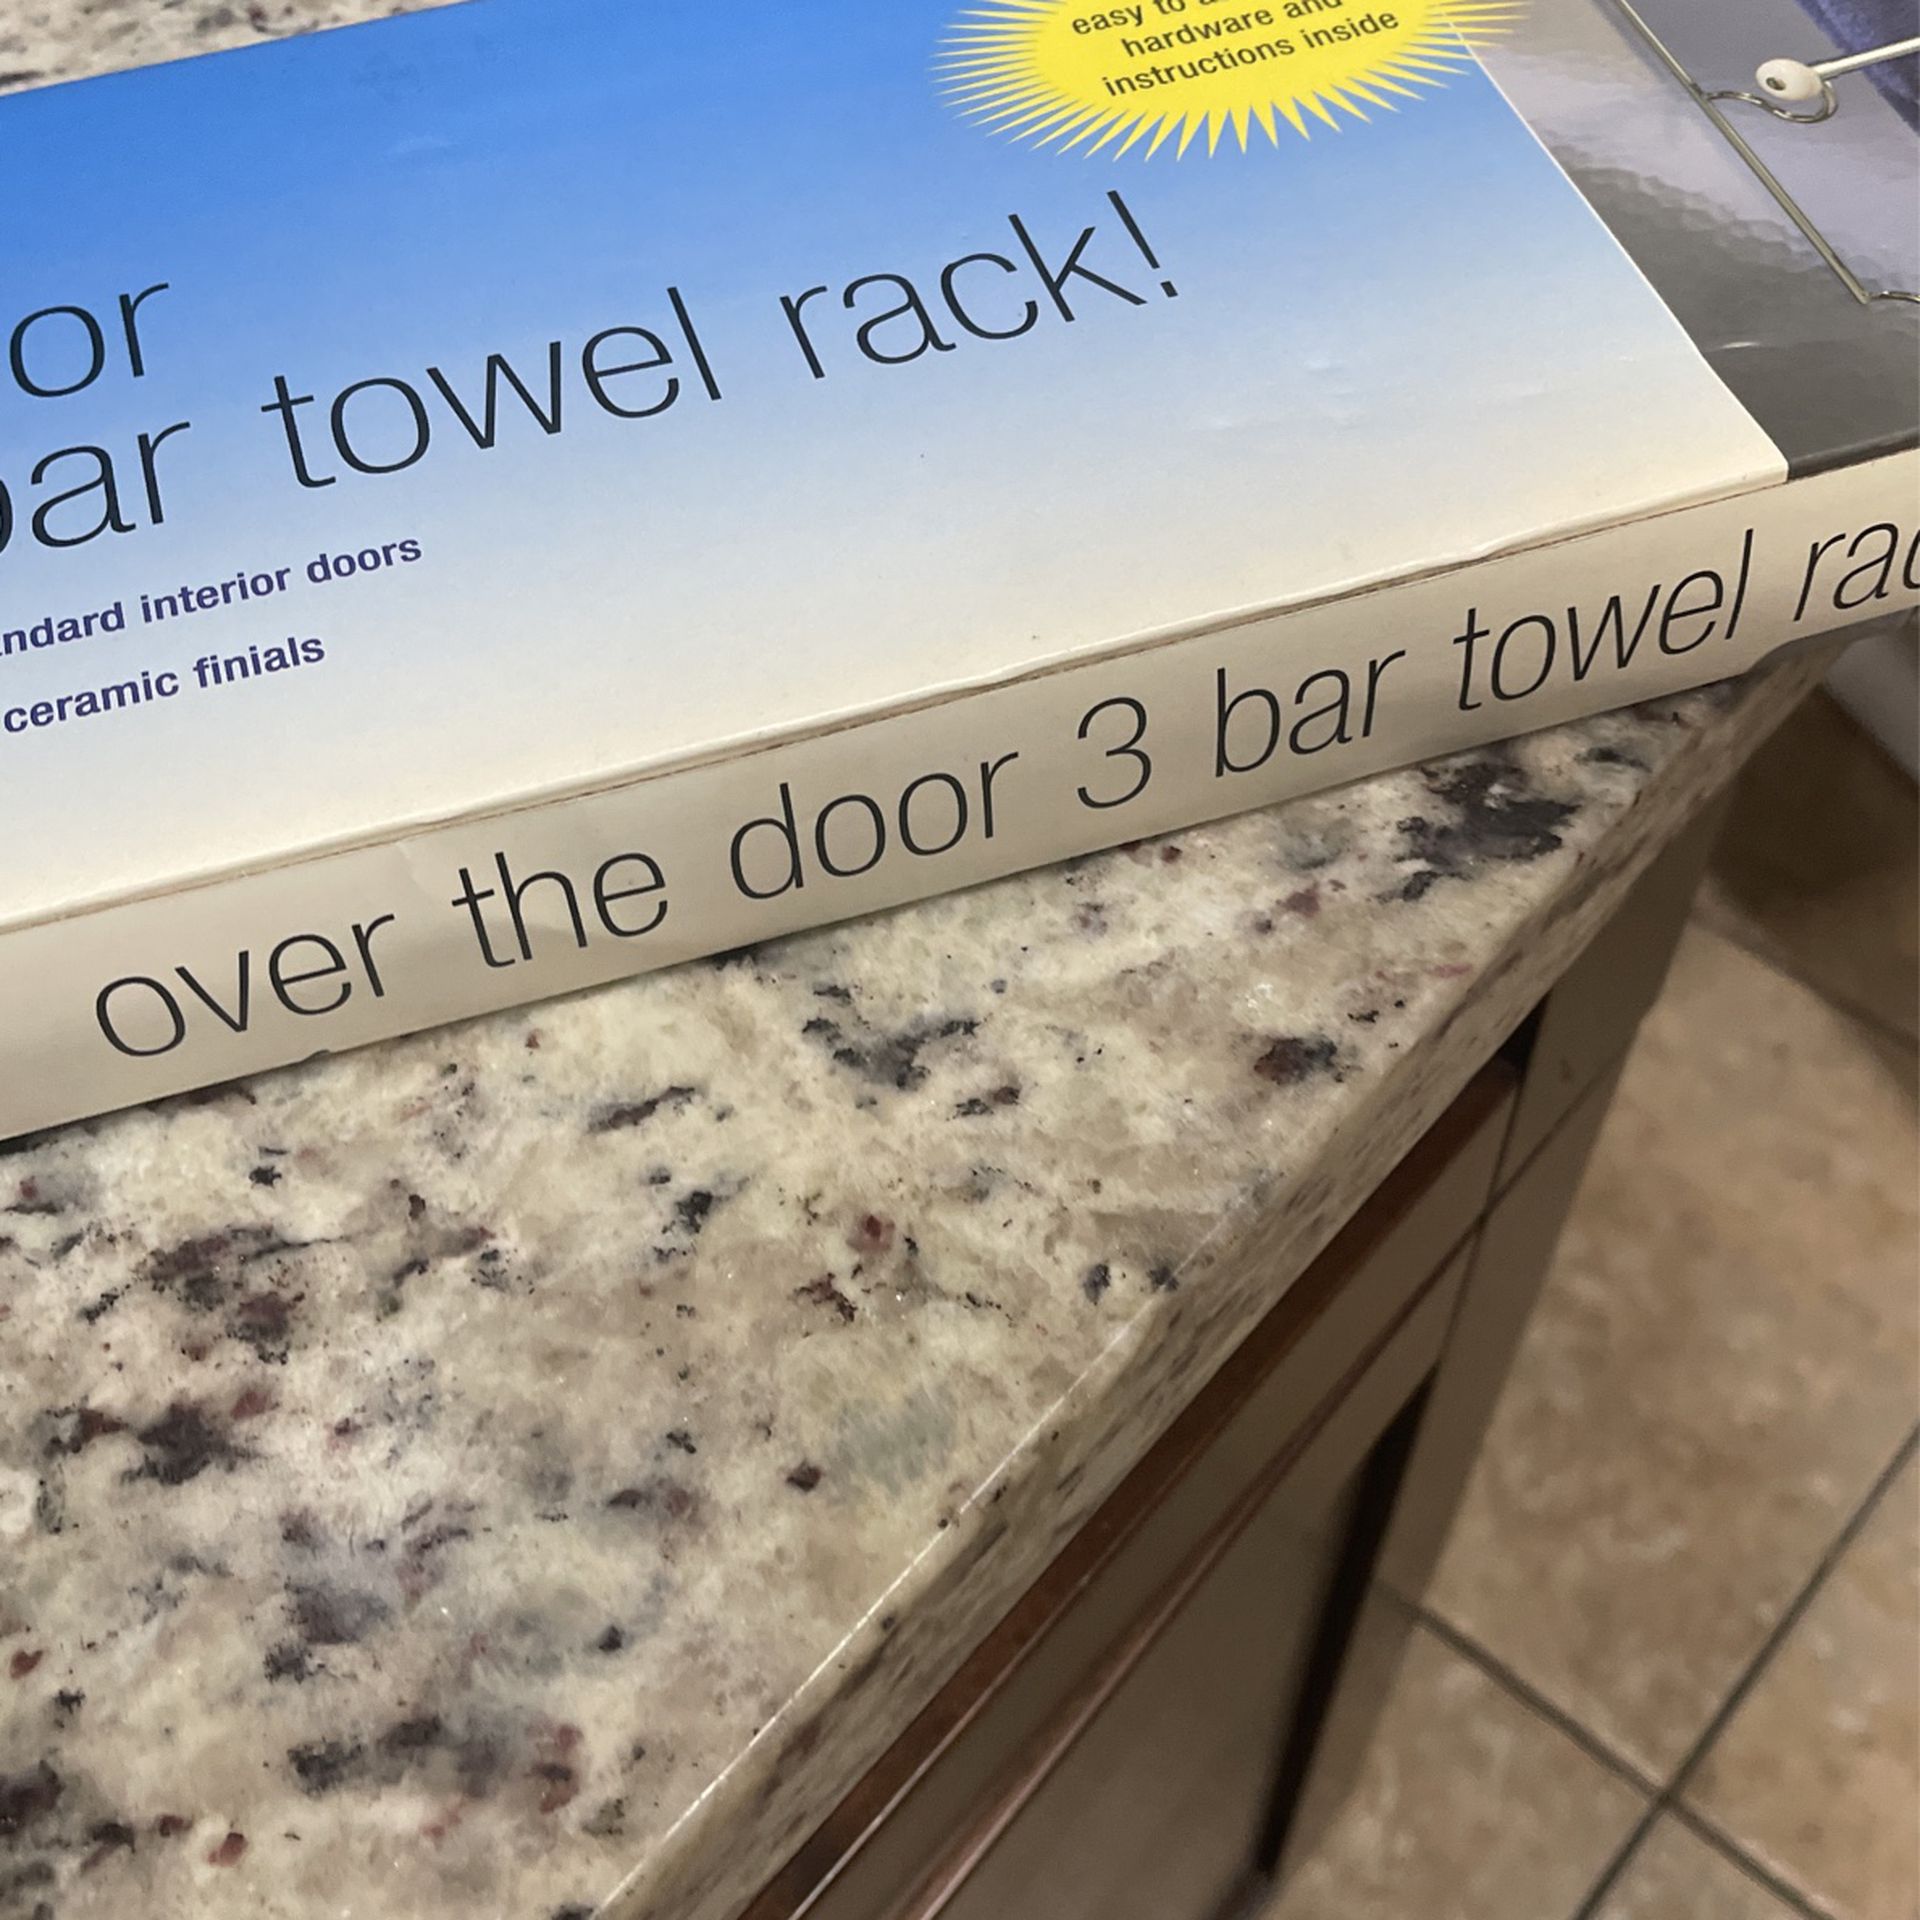 Over The Door 3 Bar Towel Rack 